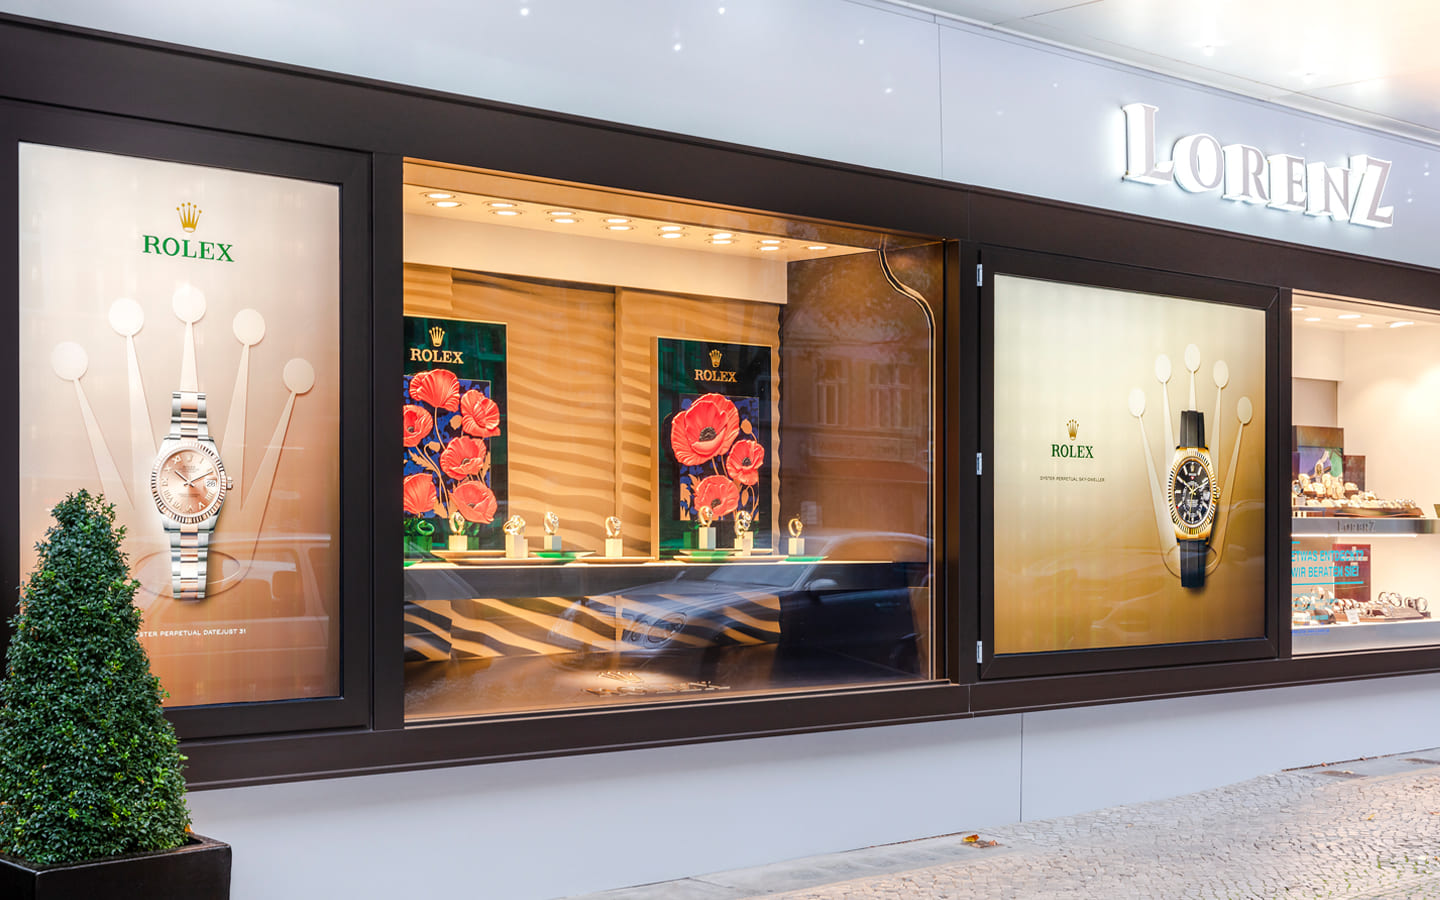 Außenansicht des Juweliergeschäftes Lorenz in Berlin. Im Schaufenster sind Rolex Werbeplakate zu sehen